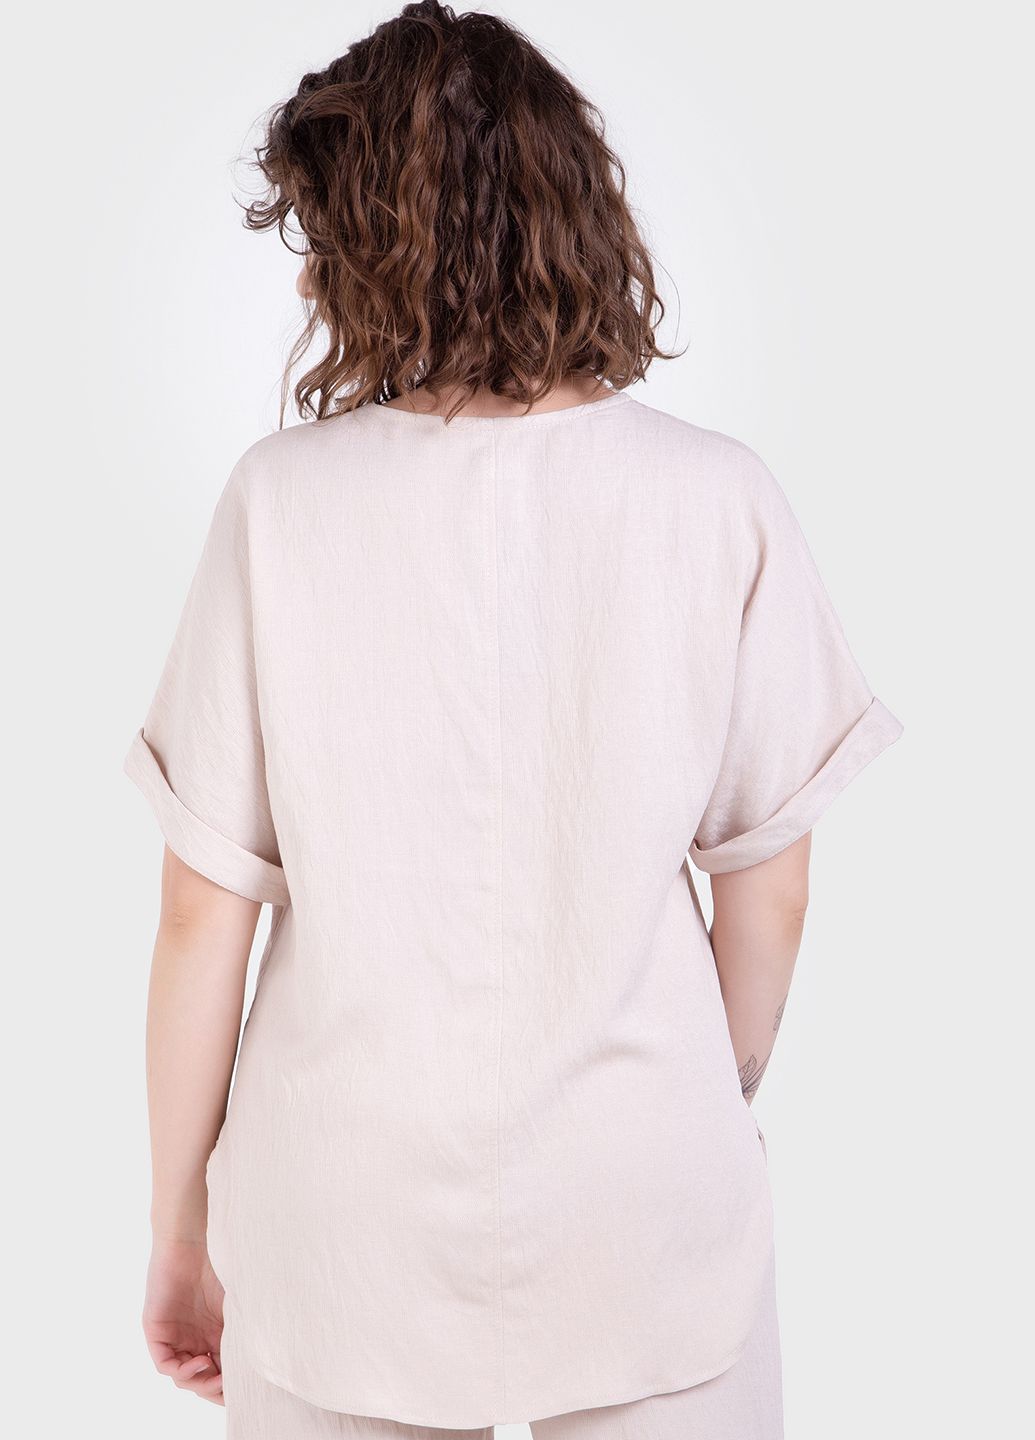 Купить Летний костюм женский двойка бежевого цвета: брюки, футболка Merlini Санремо 100000149, размер 42-44 в интернет-магазине